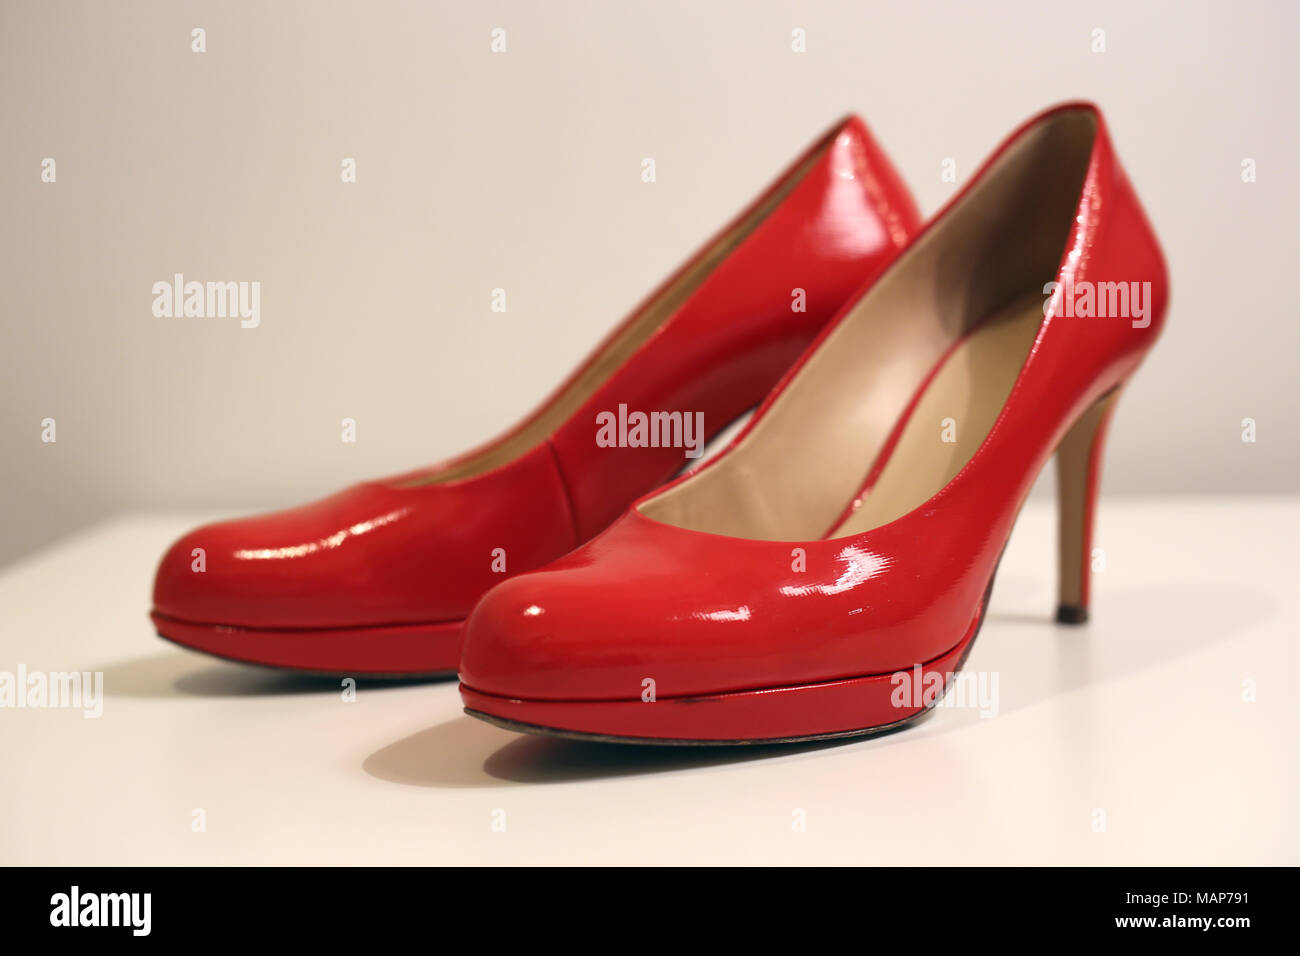 Ein Stil leben von ein paar High Heels auf einem weißen Tisch. Schuhe sind Rot glänzende Schuhe aus Leder und der Hintergrund ist weiß. Stockfoto